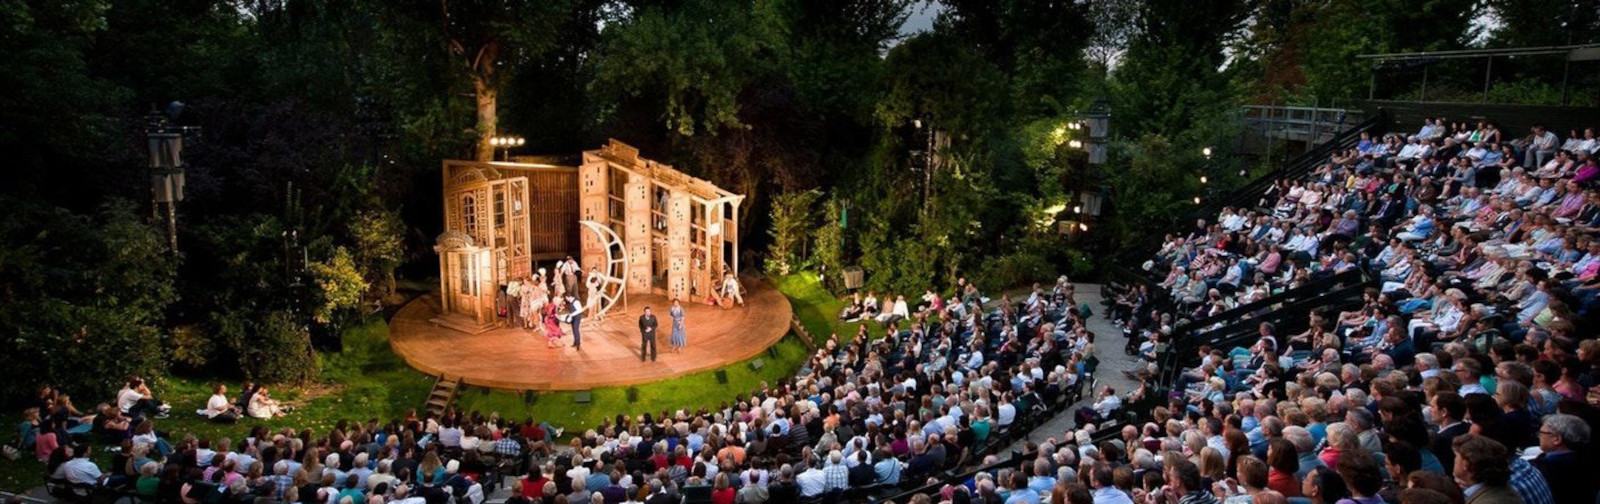 Regent's Park Open Air Theatre - Haworth Tompkins